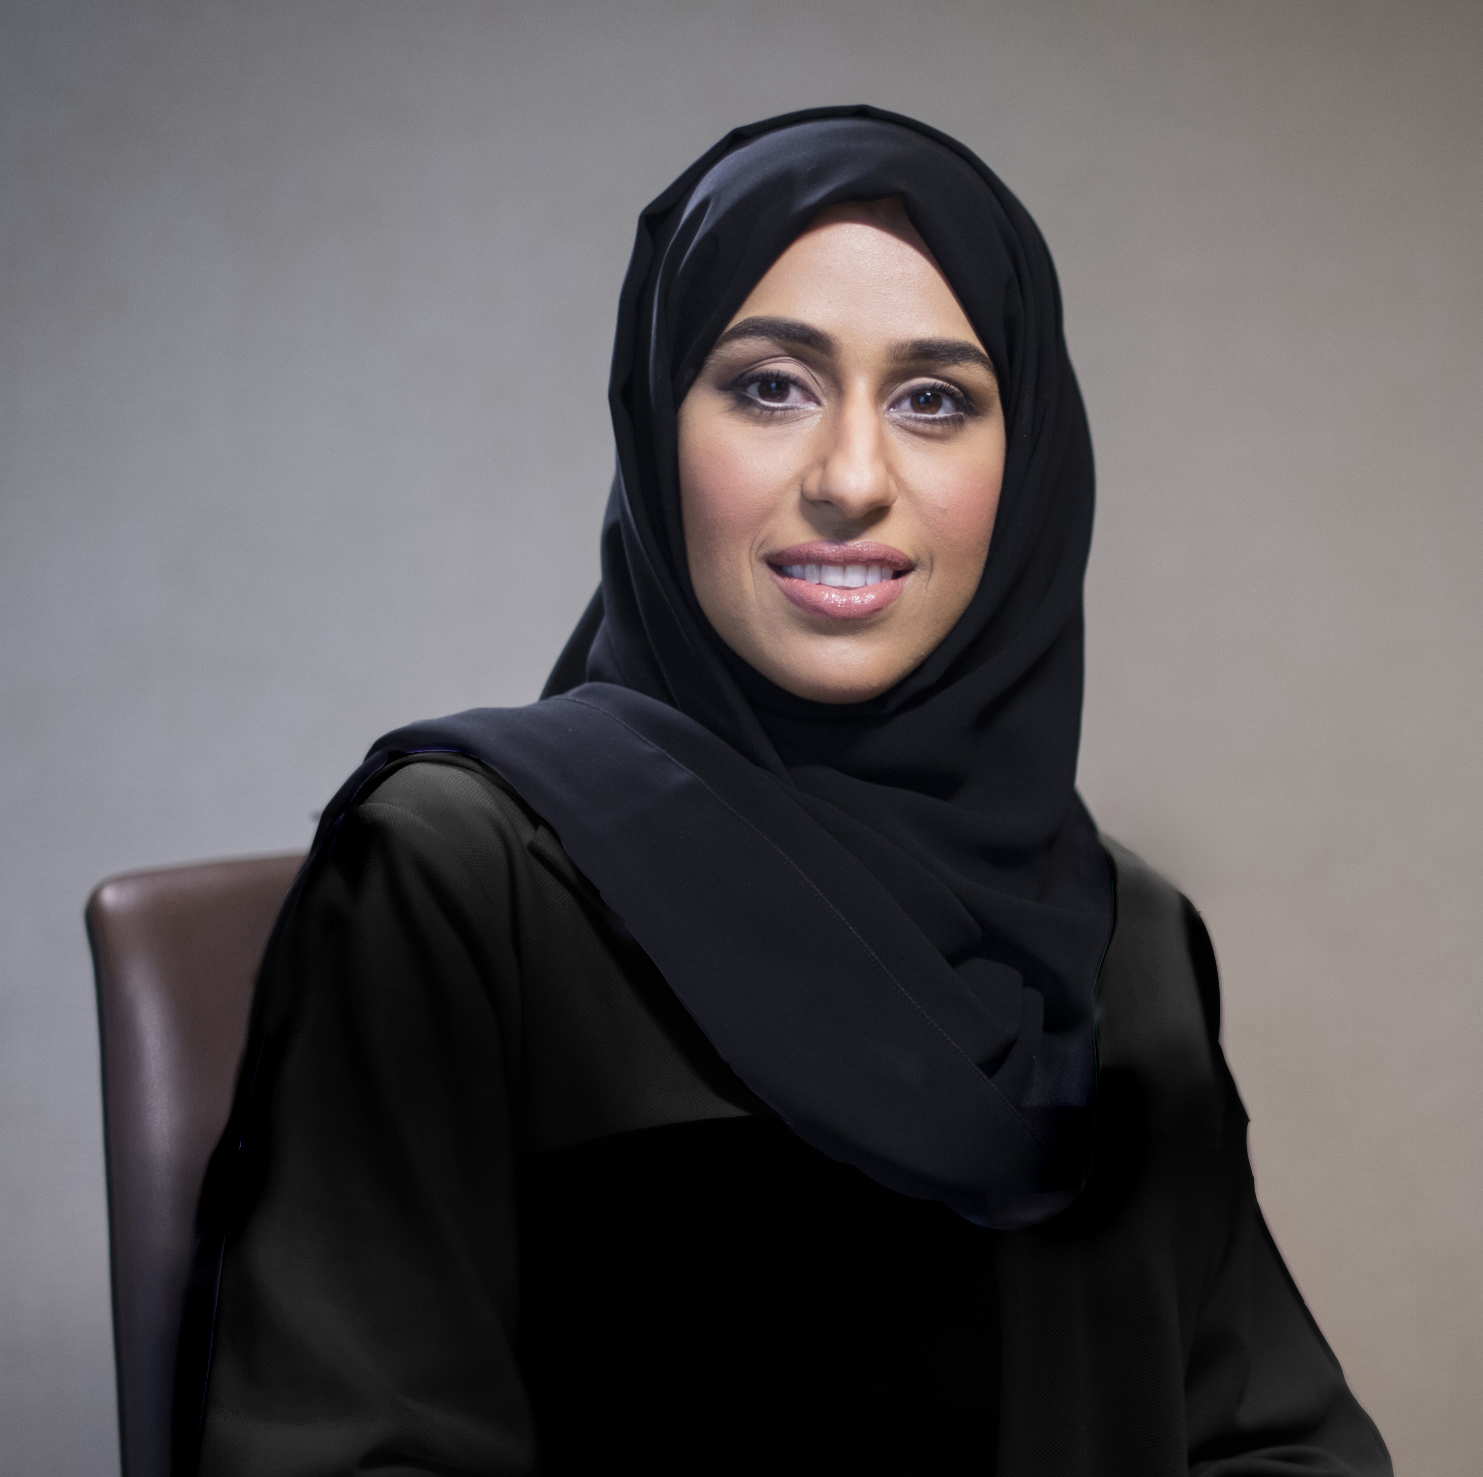 Hessa Bint Essa Buhumaid, Generaldirektorin der Community Development Authority von Dubai, spricht bei der Eröffnung von Family First an der GEMS World Academy in Dubai